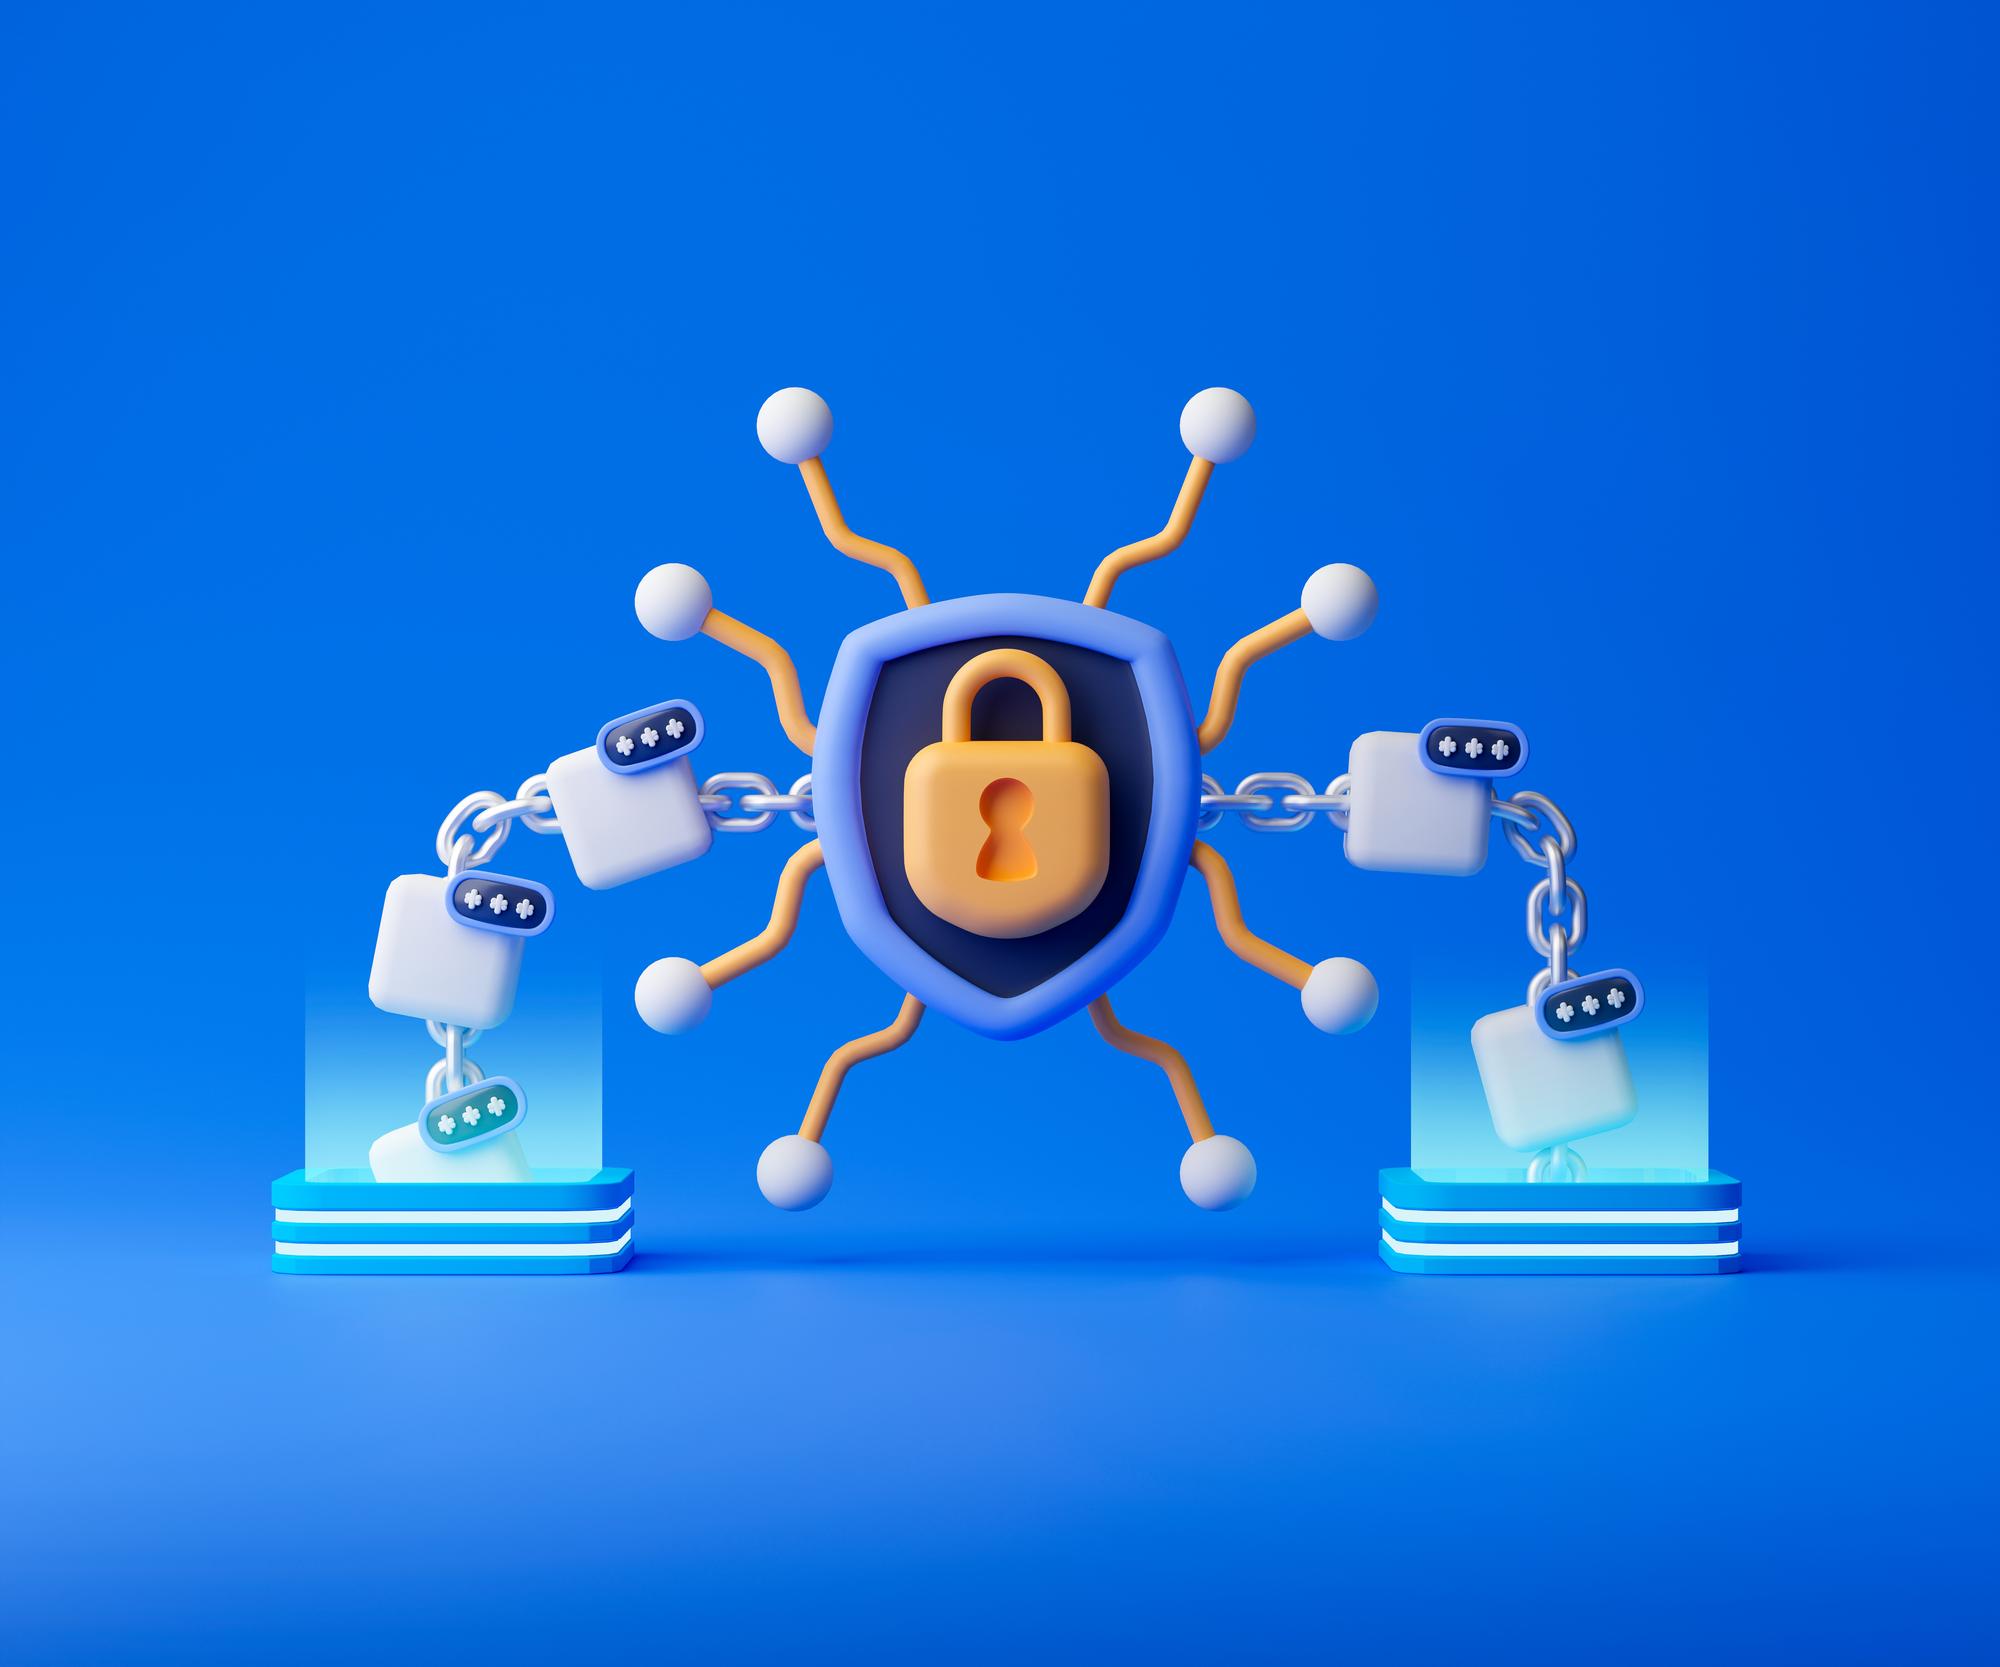 راهکارهای حفاظت از شبکه در برابر هکرها